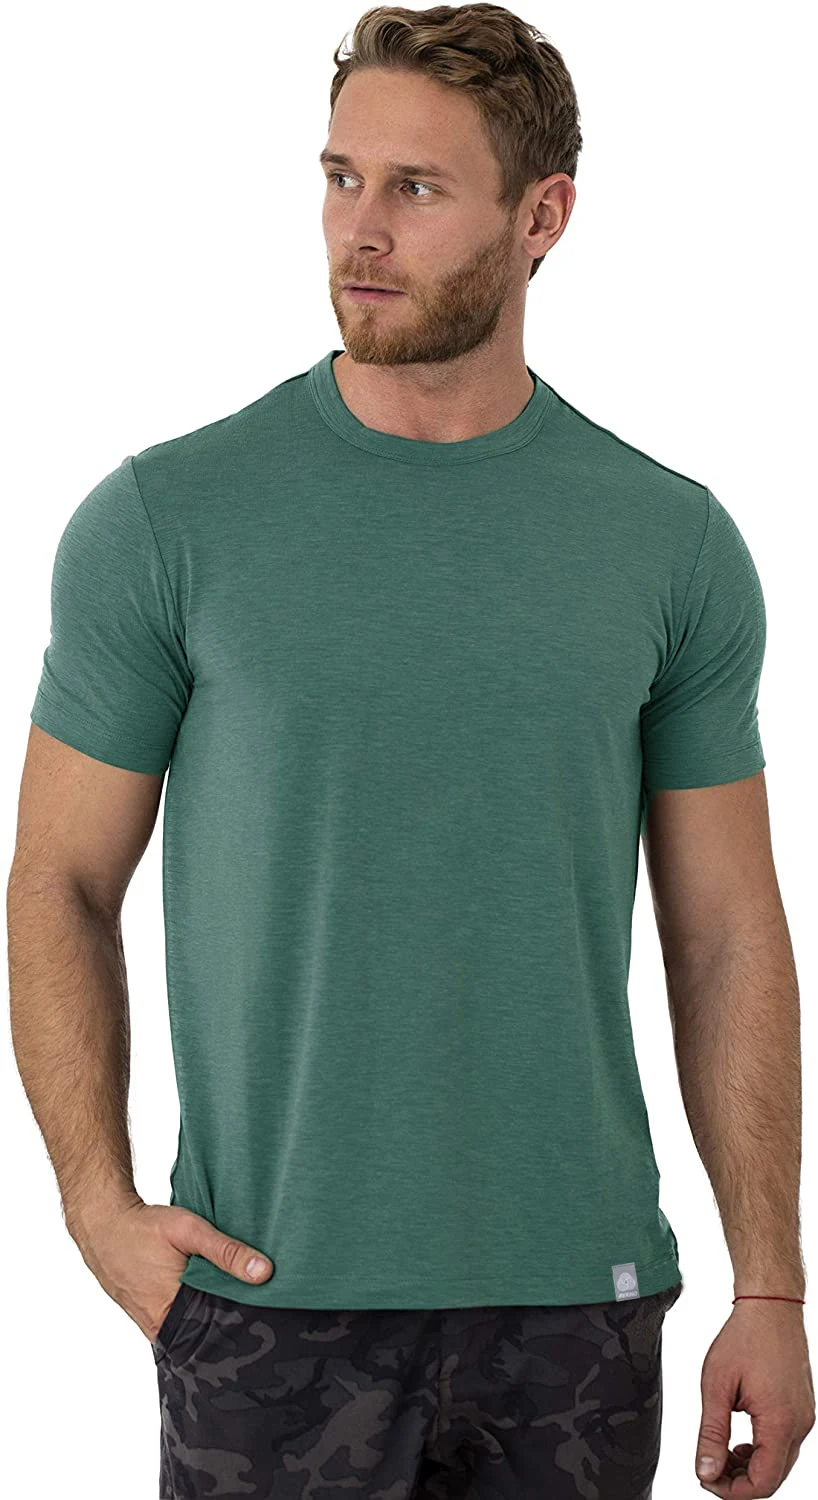 

Мужская футболка из шерсти мериноса NO.2 A1378, 100% мериносовая шерсть, легкая Базовая мягкая Влагоотводящая дышащая футболка